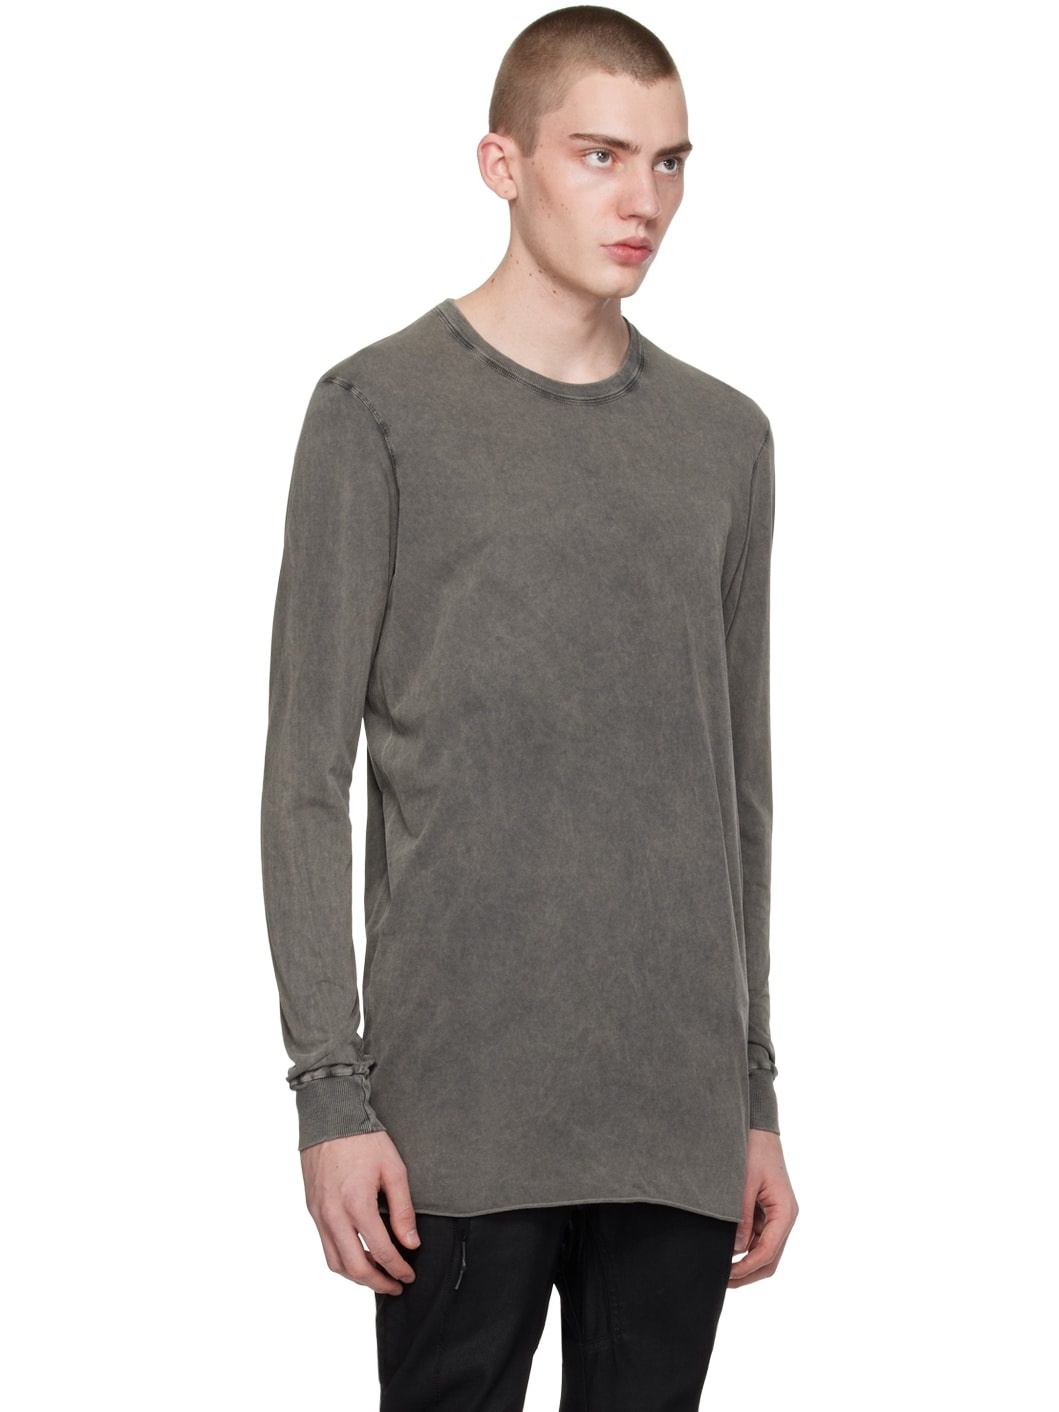 Gray LS1B Long Sleeve T-Shirt - 2